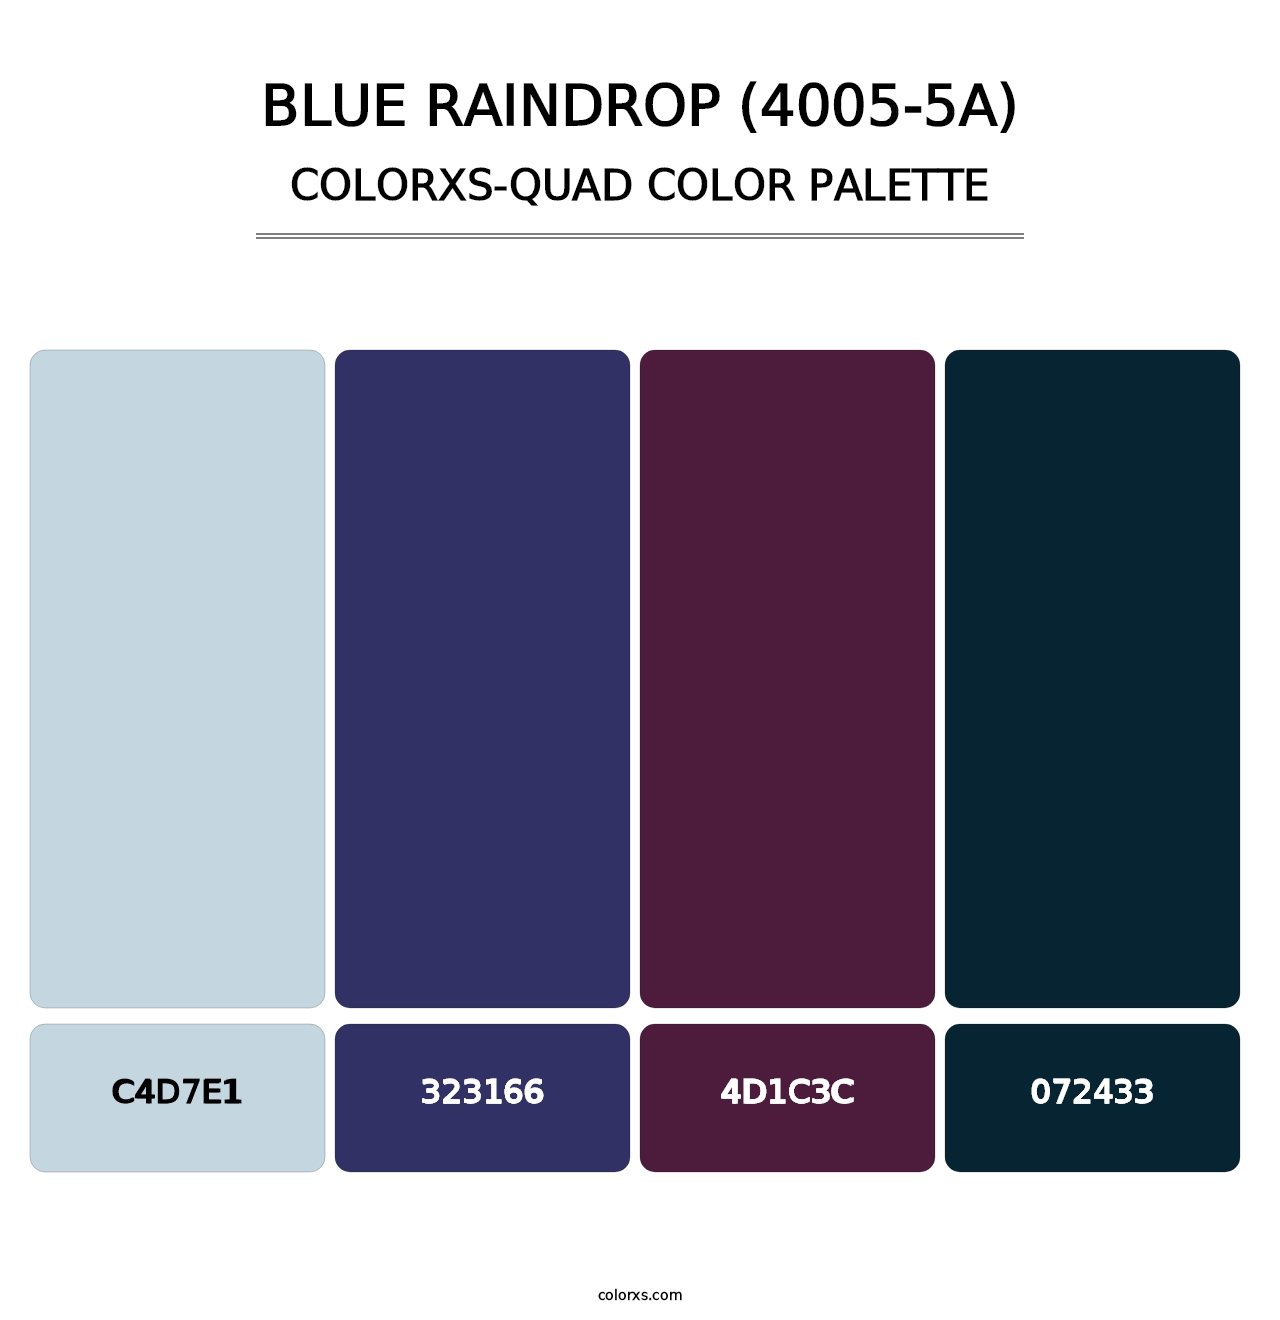 Blue Raindrop (4005-5A) - Colorxs Quad Palette